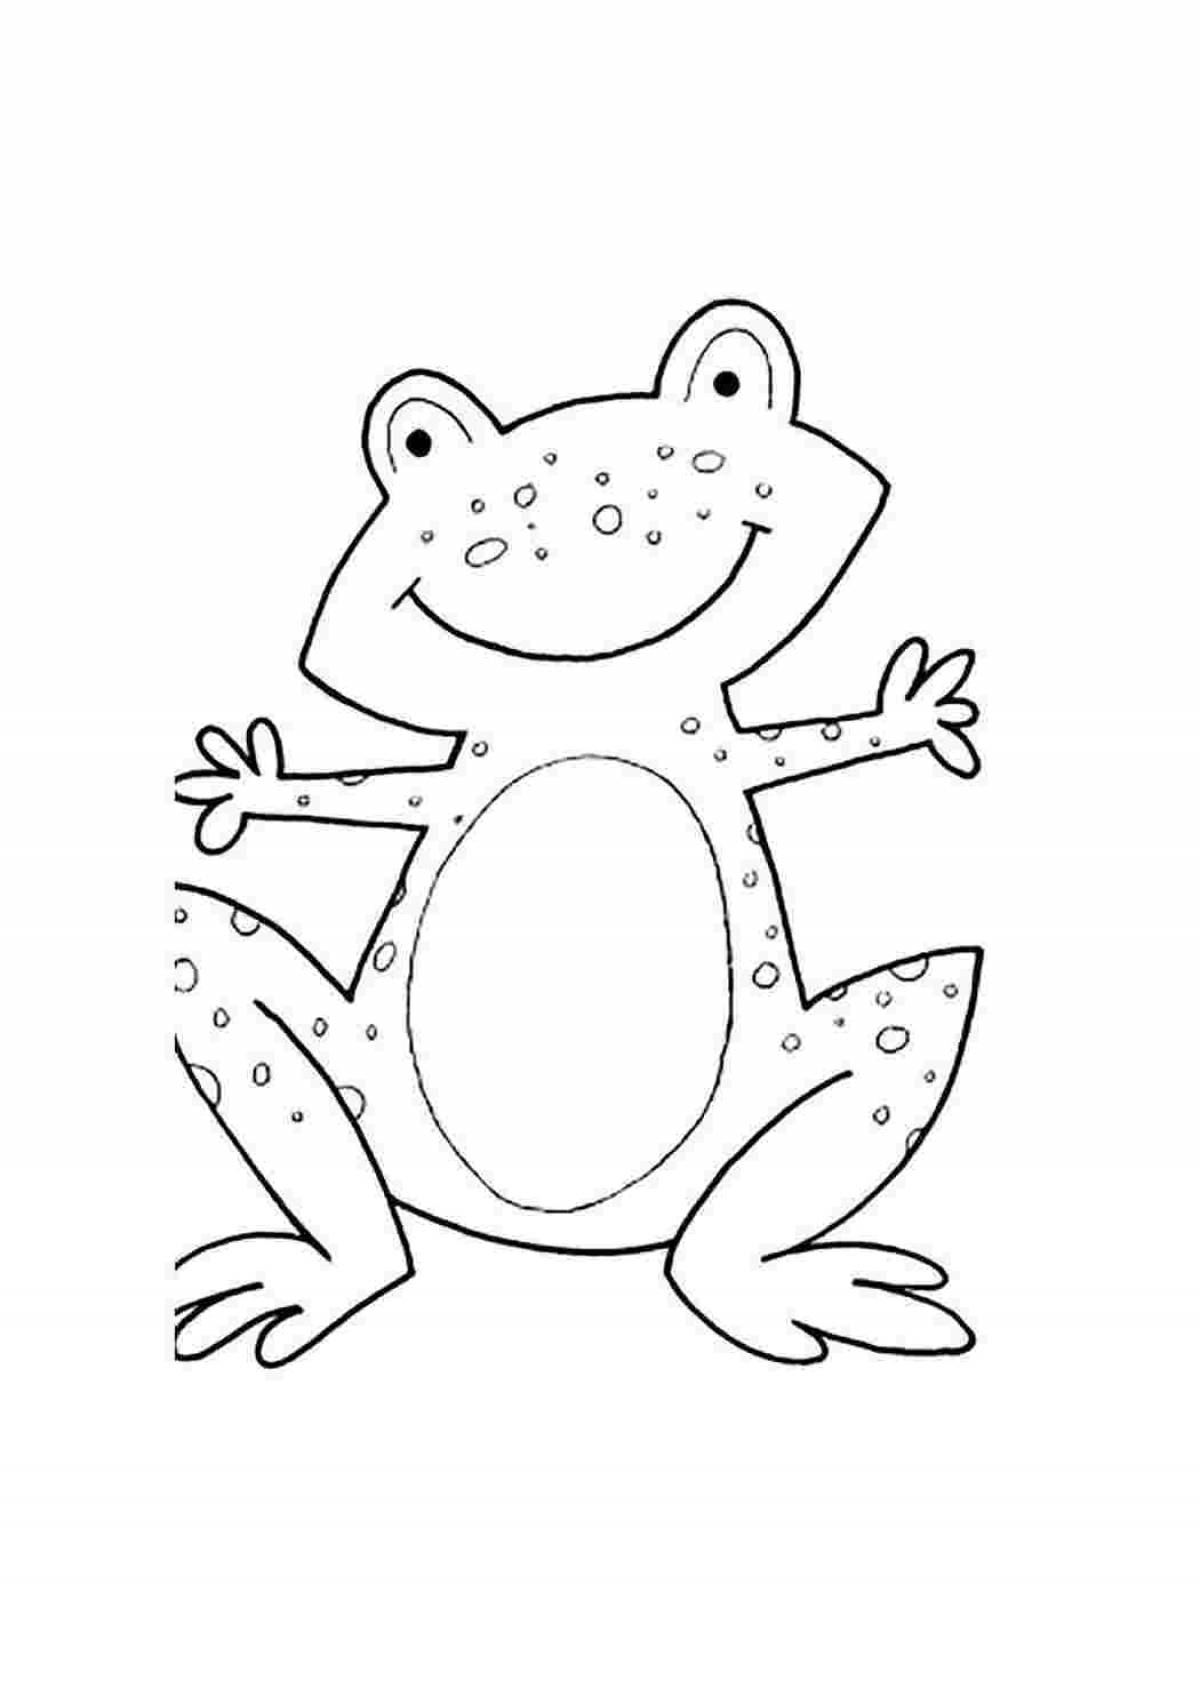 Wonderful frog-teremok coloring book